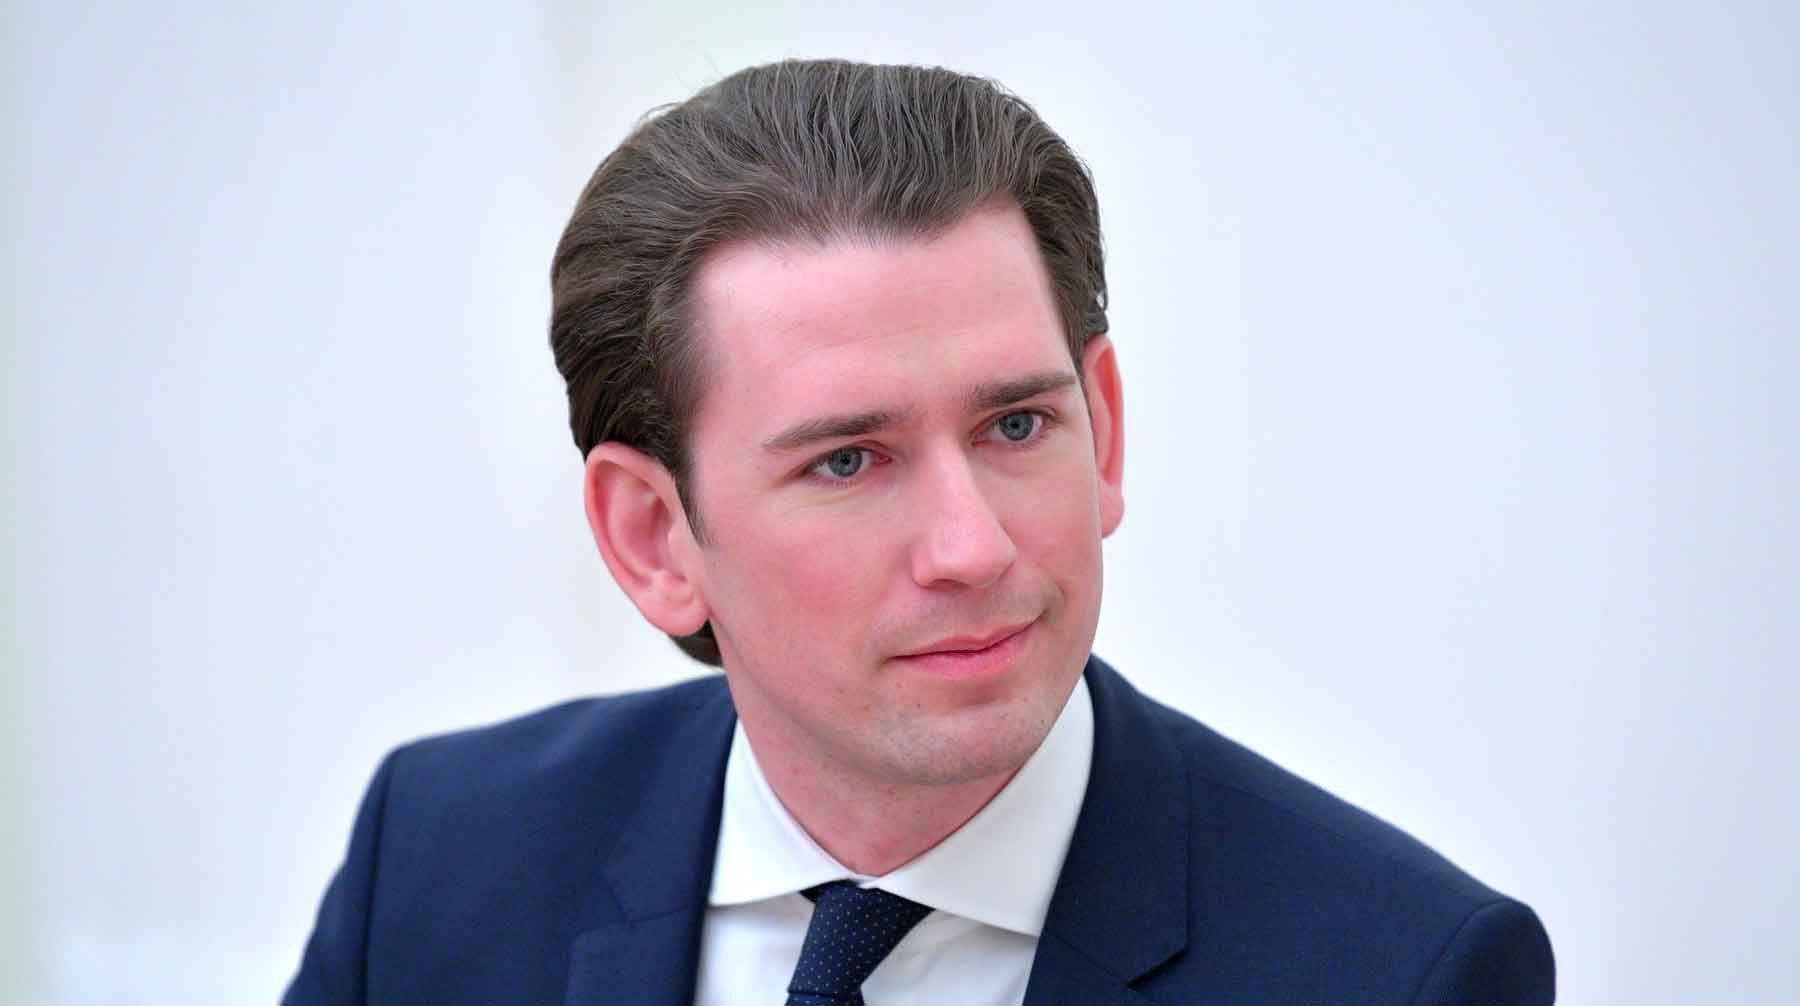 Австрийский канцлер Бригитте Бирляйн поздравила лидера Австрийской народной партии с победой его политической силы Себастьян Курц